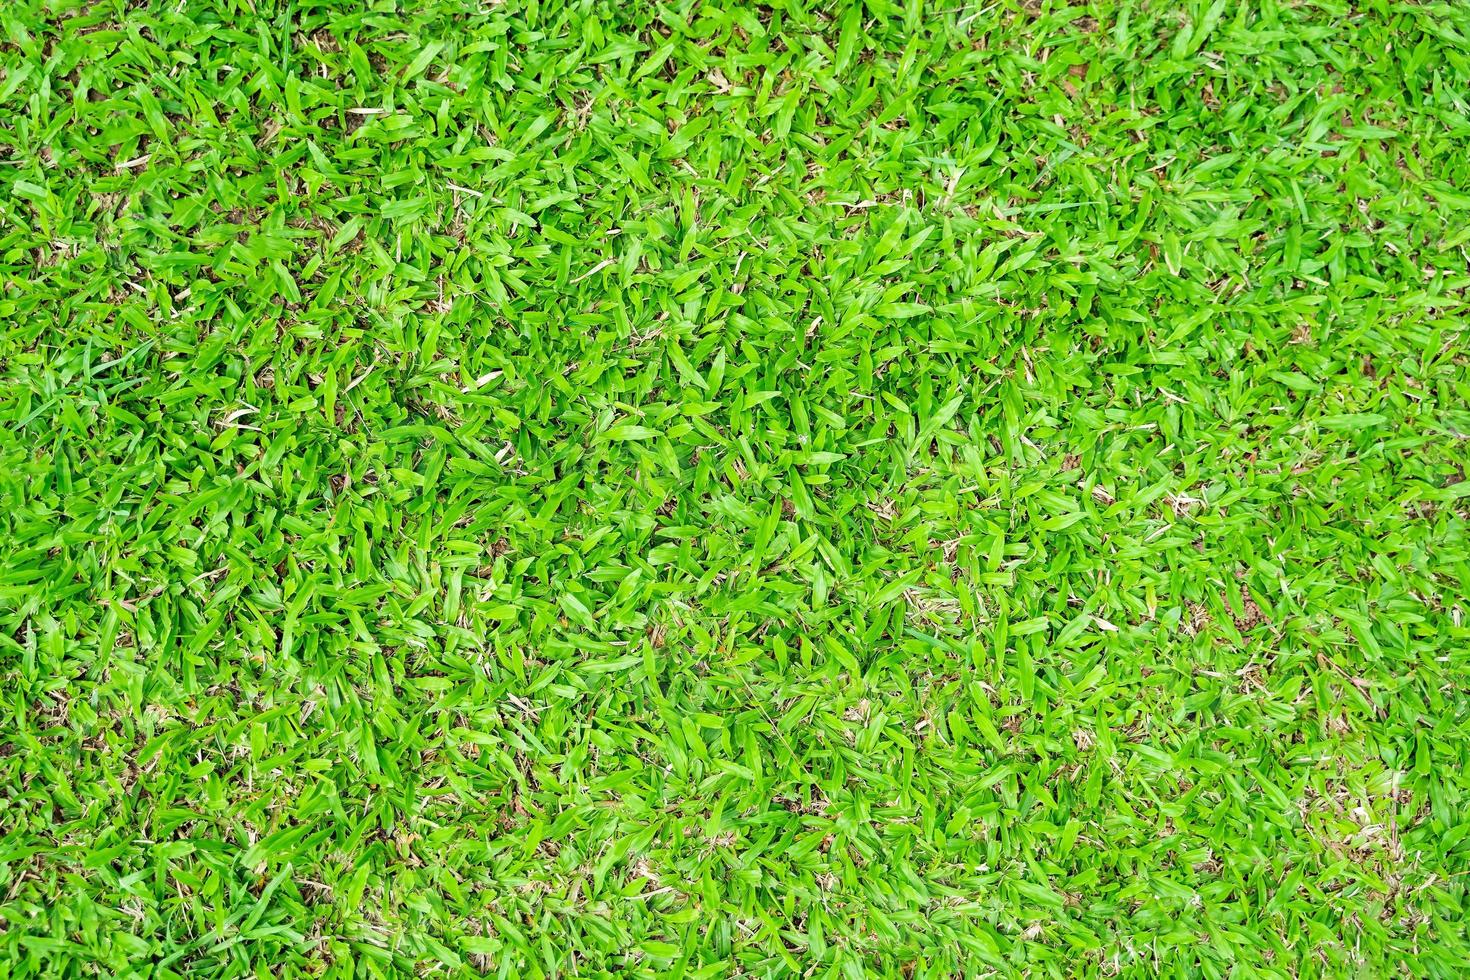 groen gras textuur voor achtergrond. groen gazon patroon en textuur achtergrond. foto